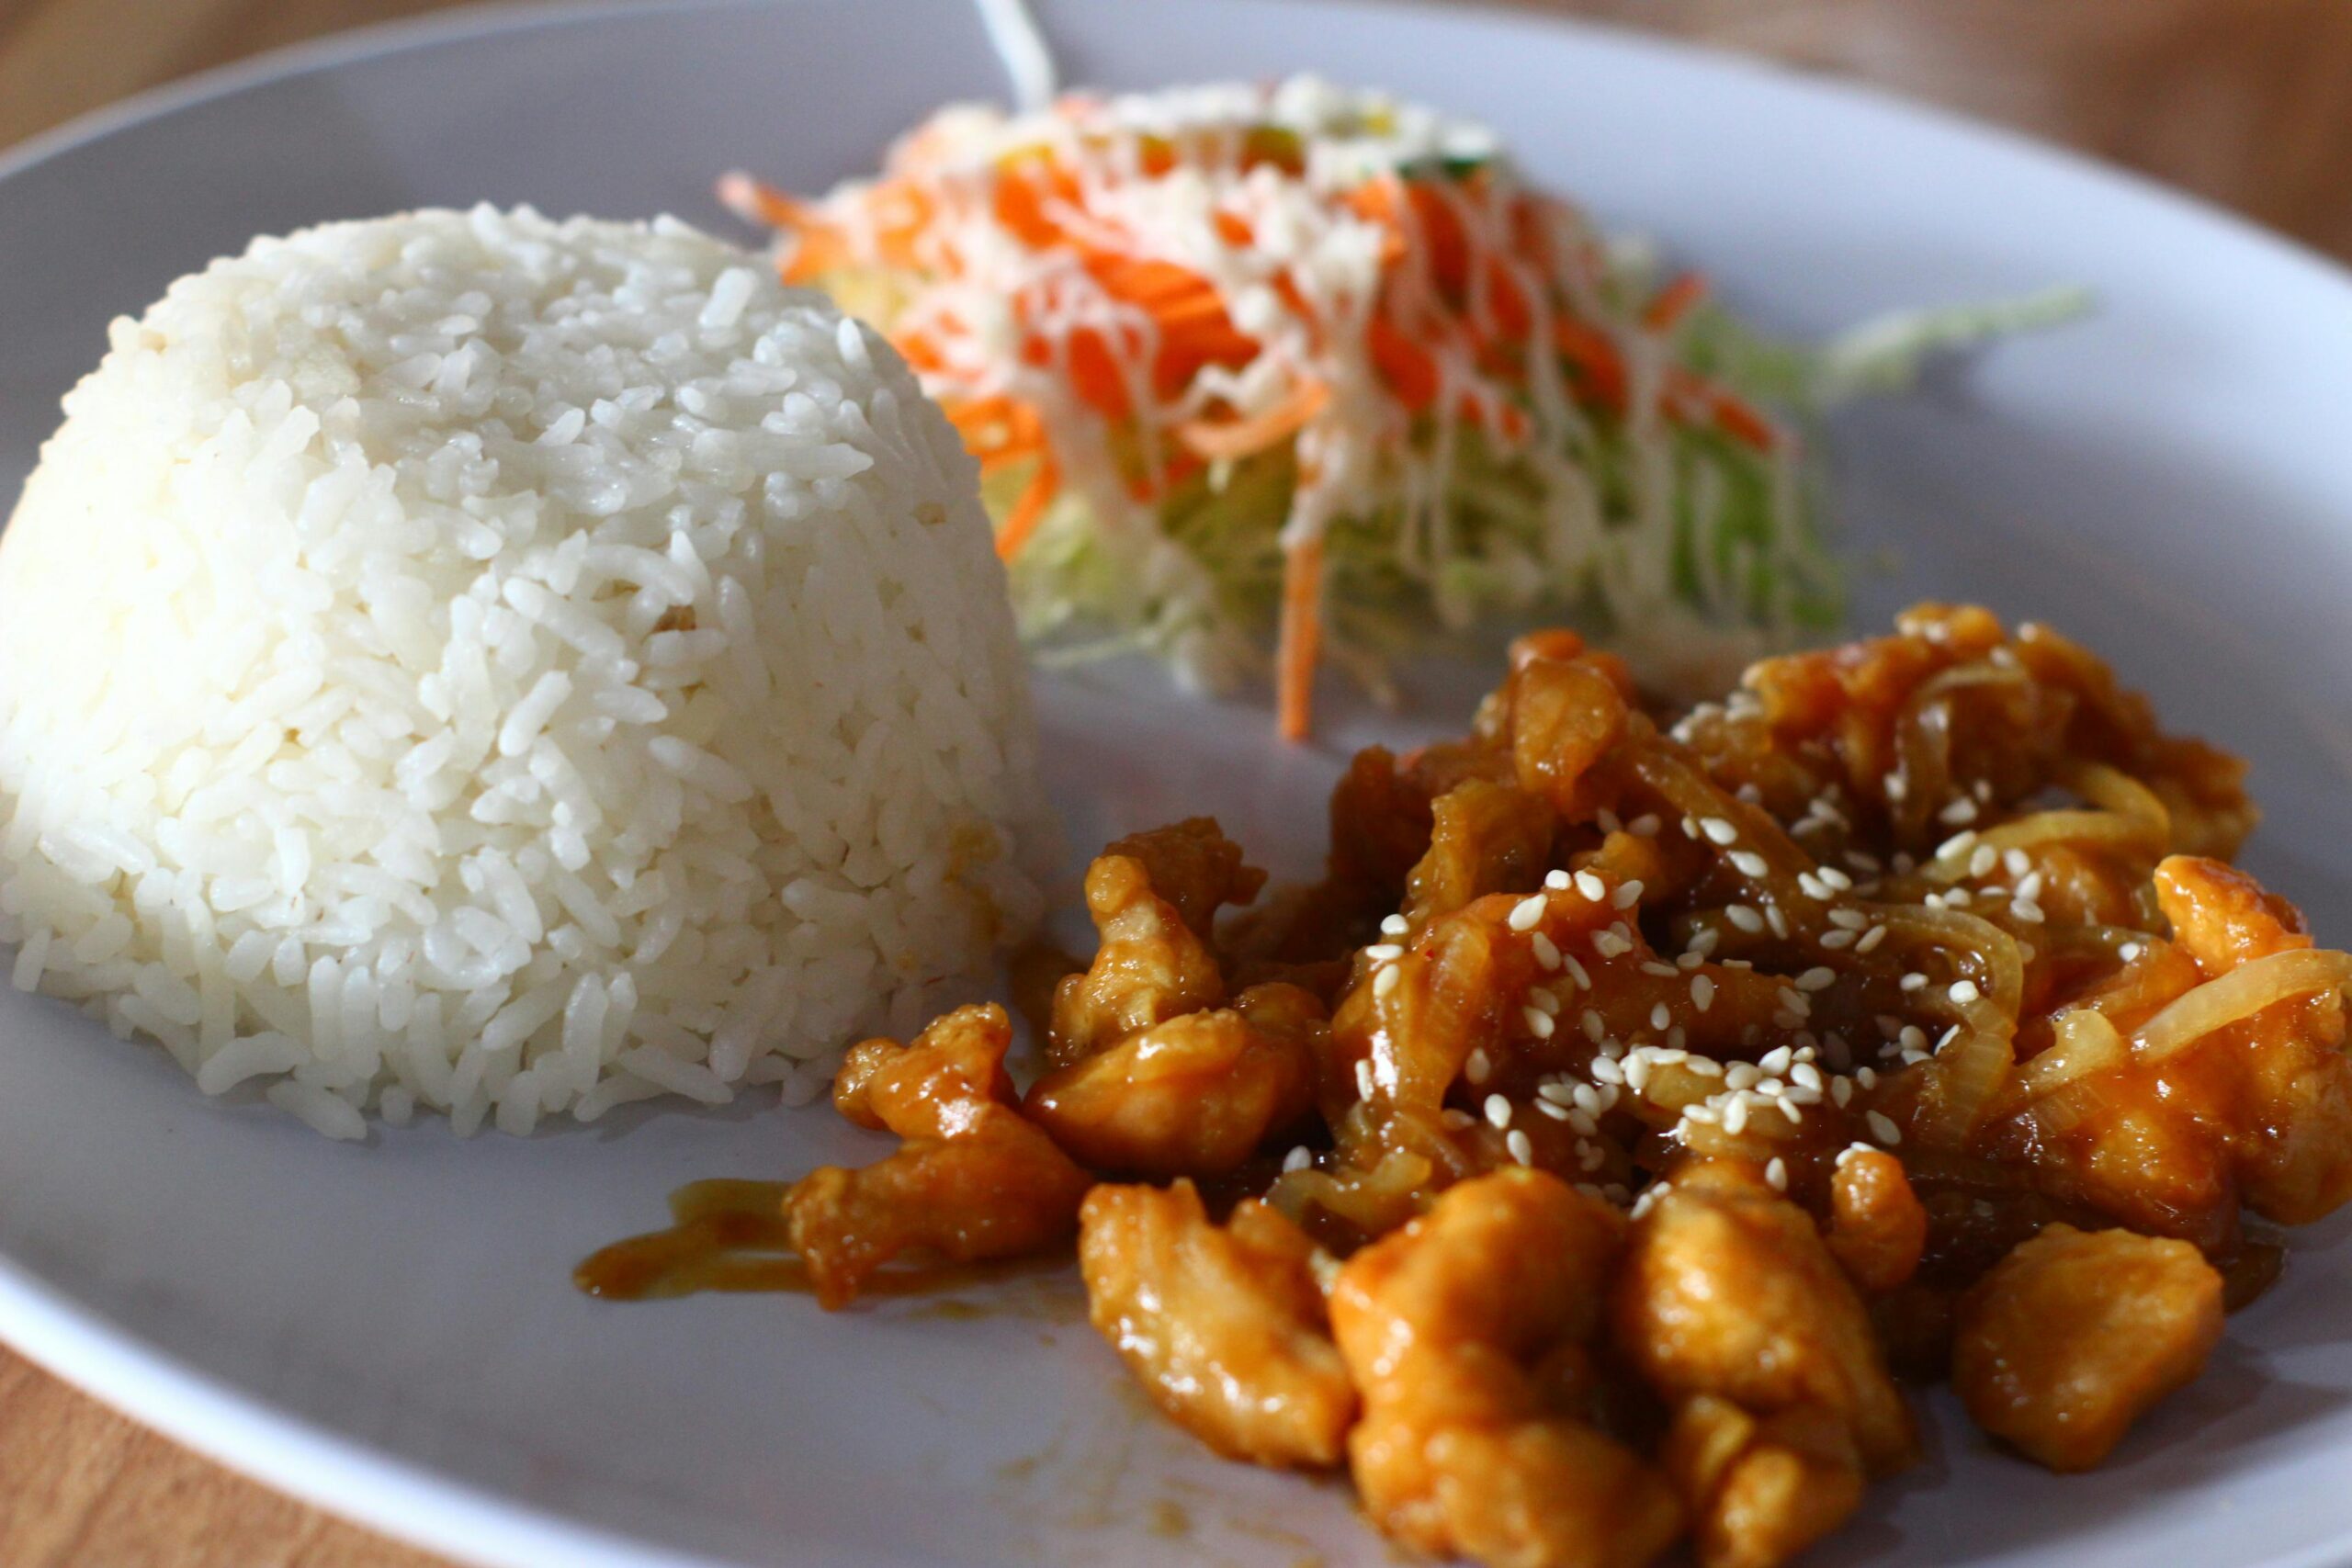 Na slici je poslužen obrok koji se sastoji od kugle bijele riže, porcije salate i piletine u umaku. Riža je savršeno kuhana i poslužena u obliku kupole.